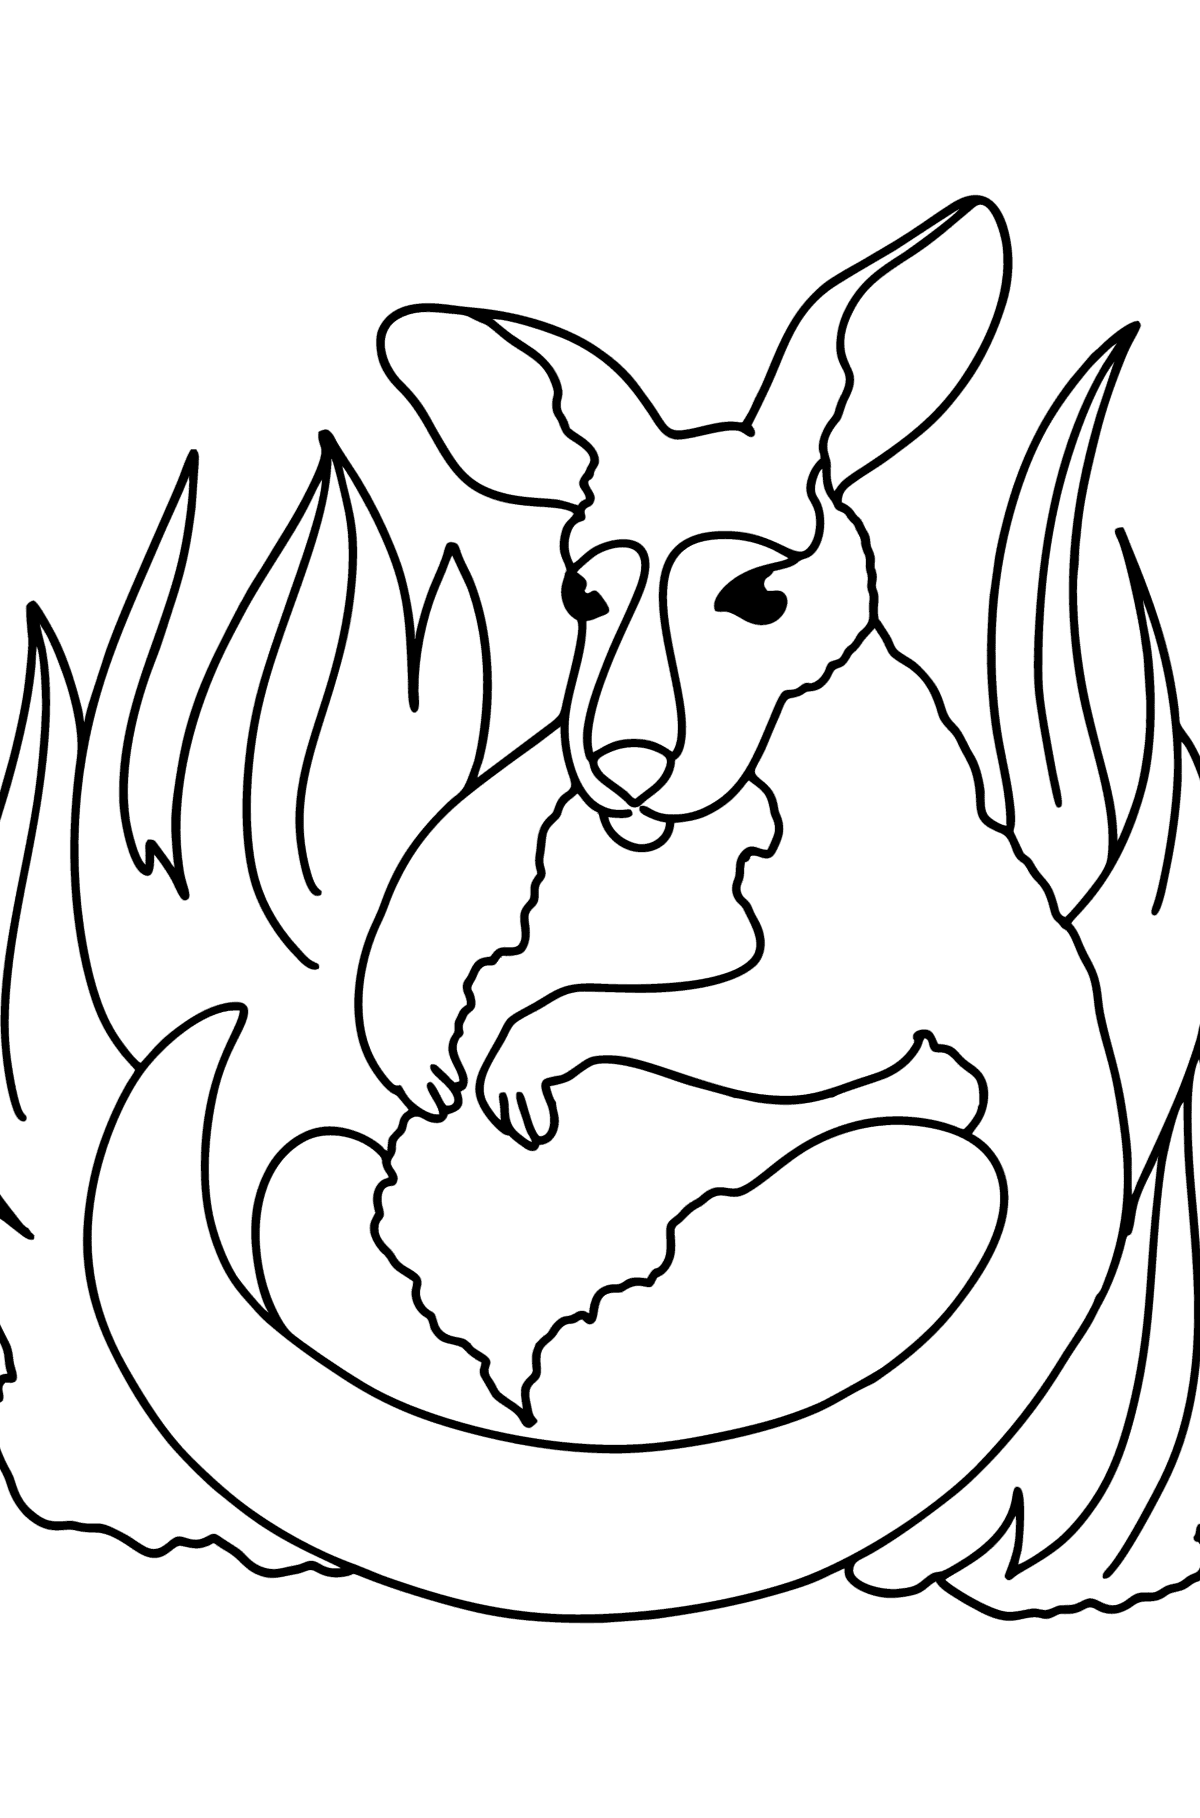 Kleurplaat liefe baby kangoeroe - kleurplaten voor kinderen